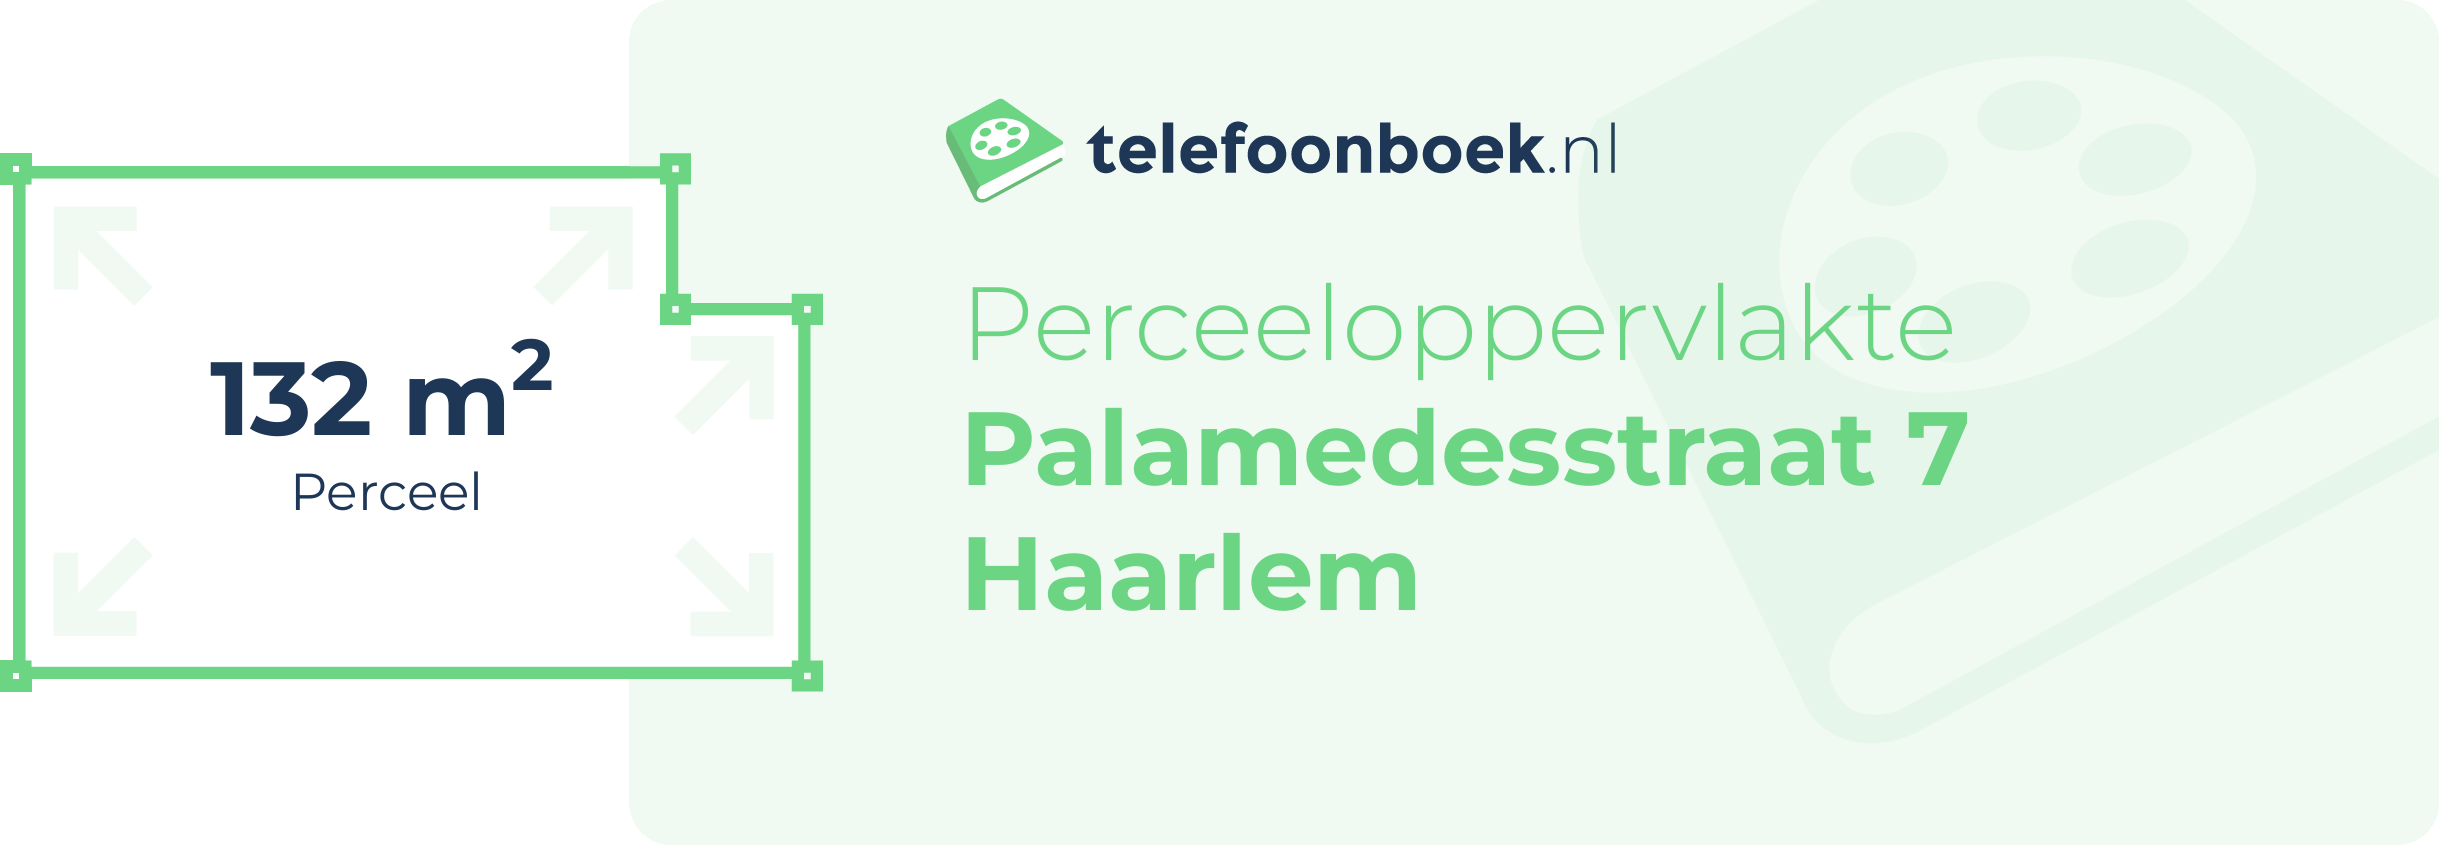 Perceeloppervlakte Palamedesstraat 7 Haarlem